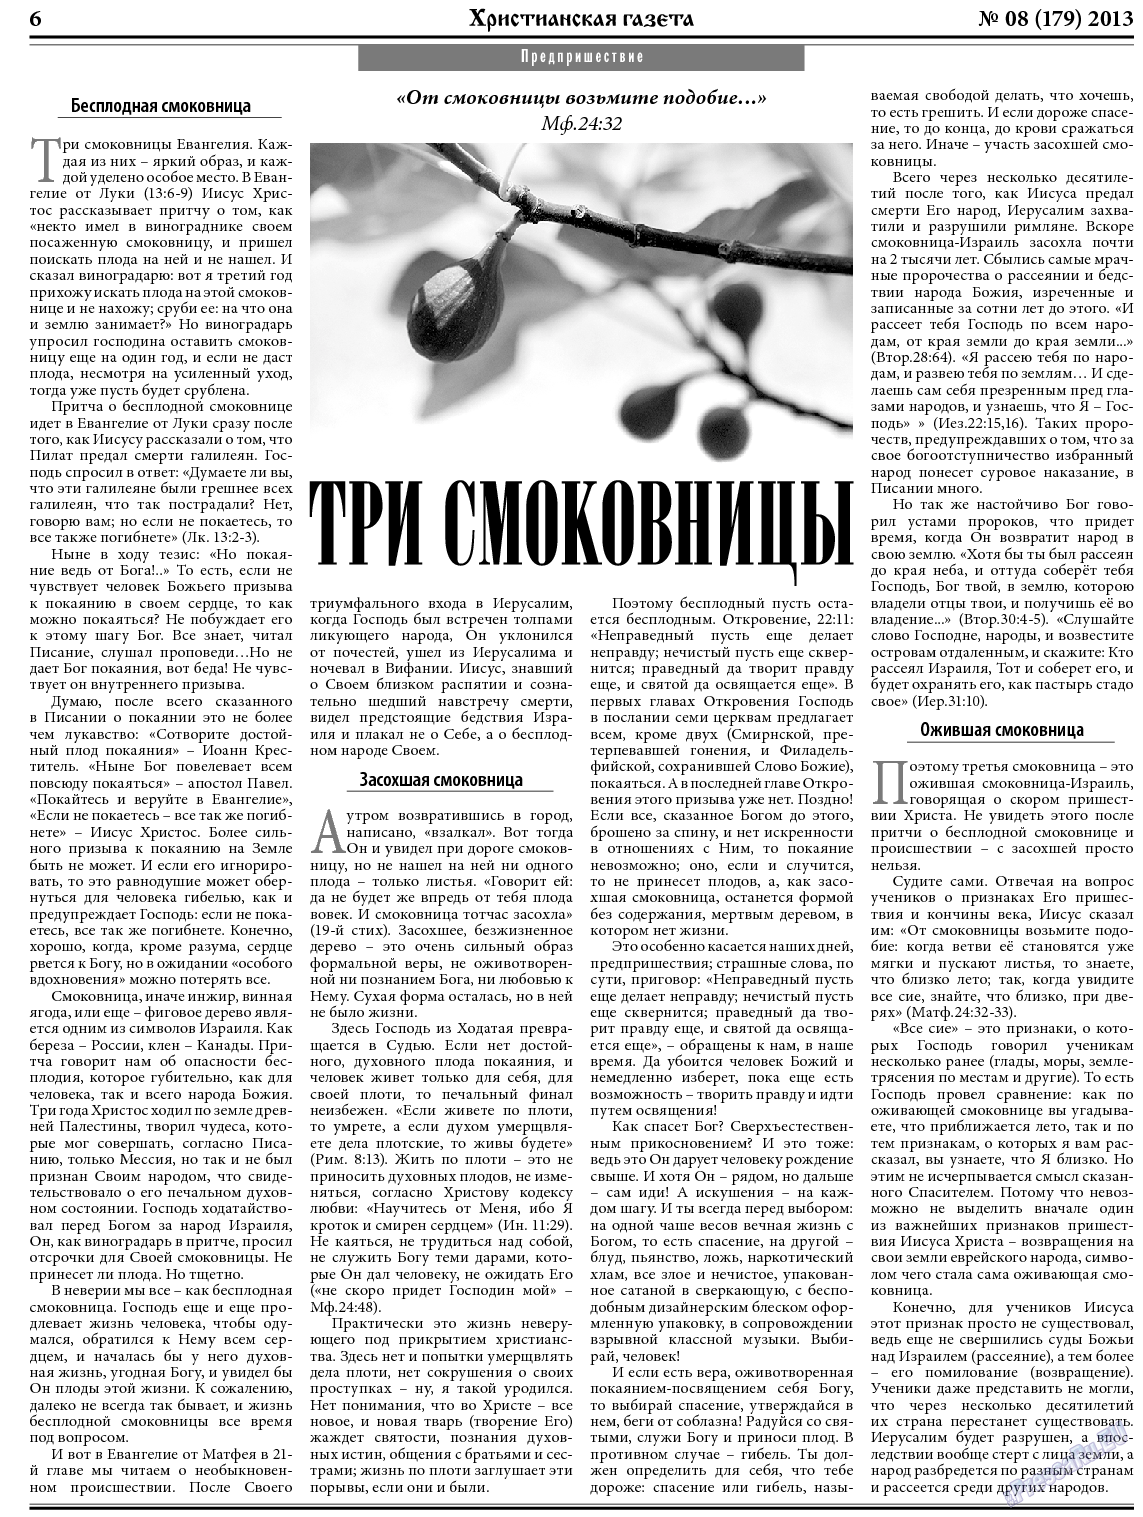 Христианская газета, газета. 2013 №8 стр.6